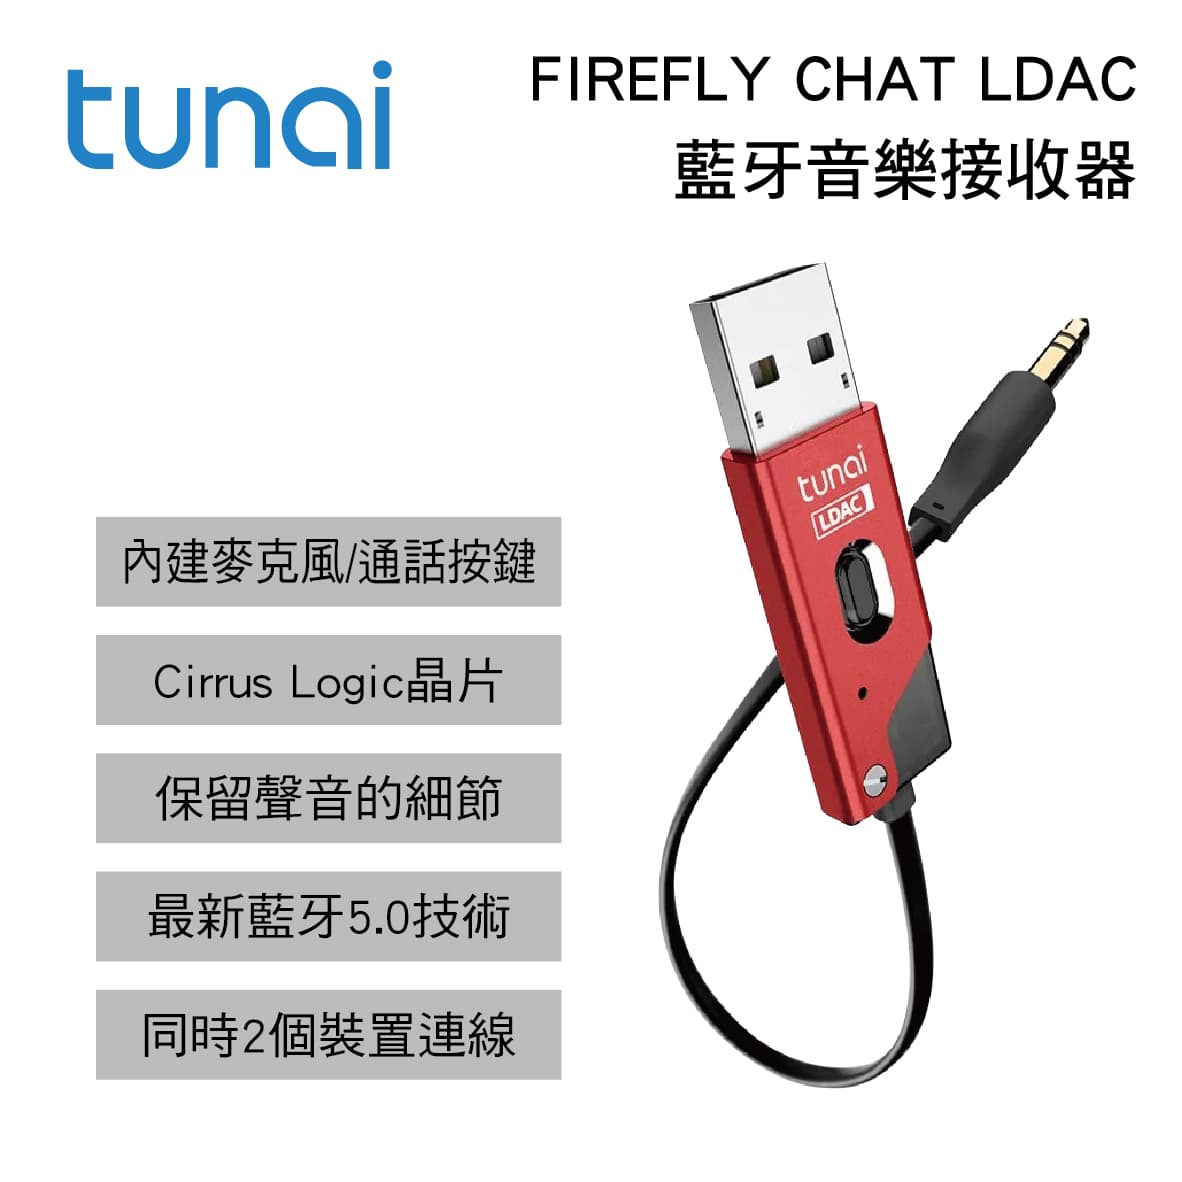 真便宜 TUNAI FIREFLY CHAT LDAC GT0230201 藍牙音樂接收器-紅